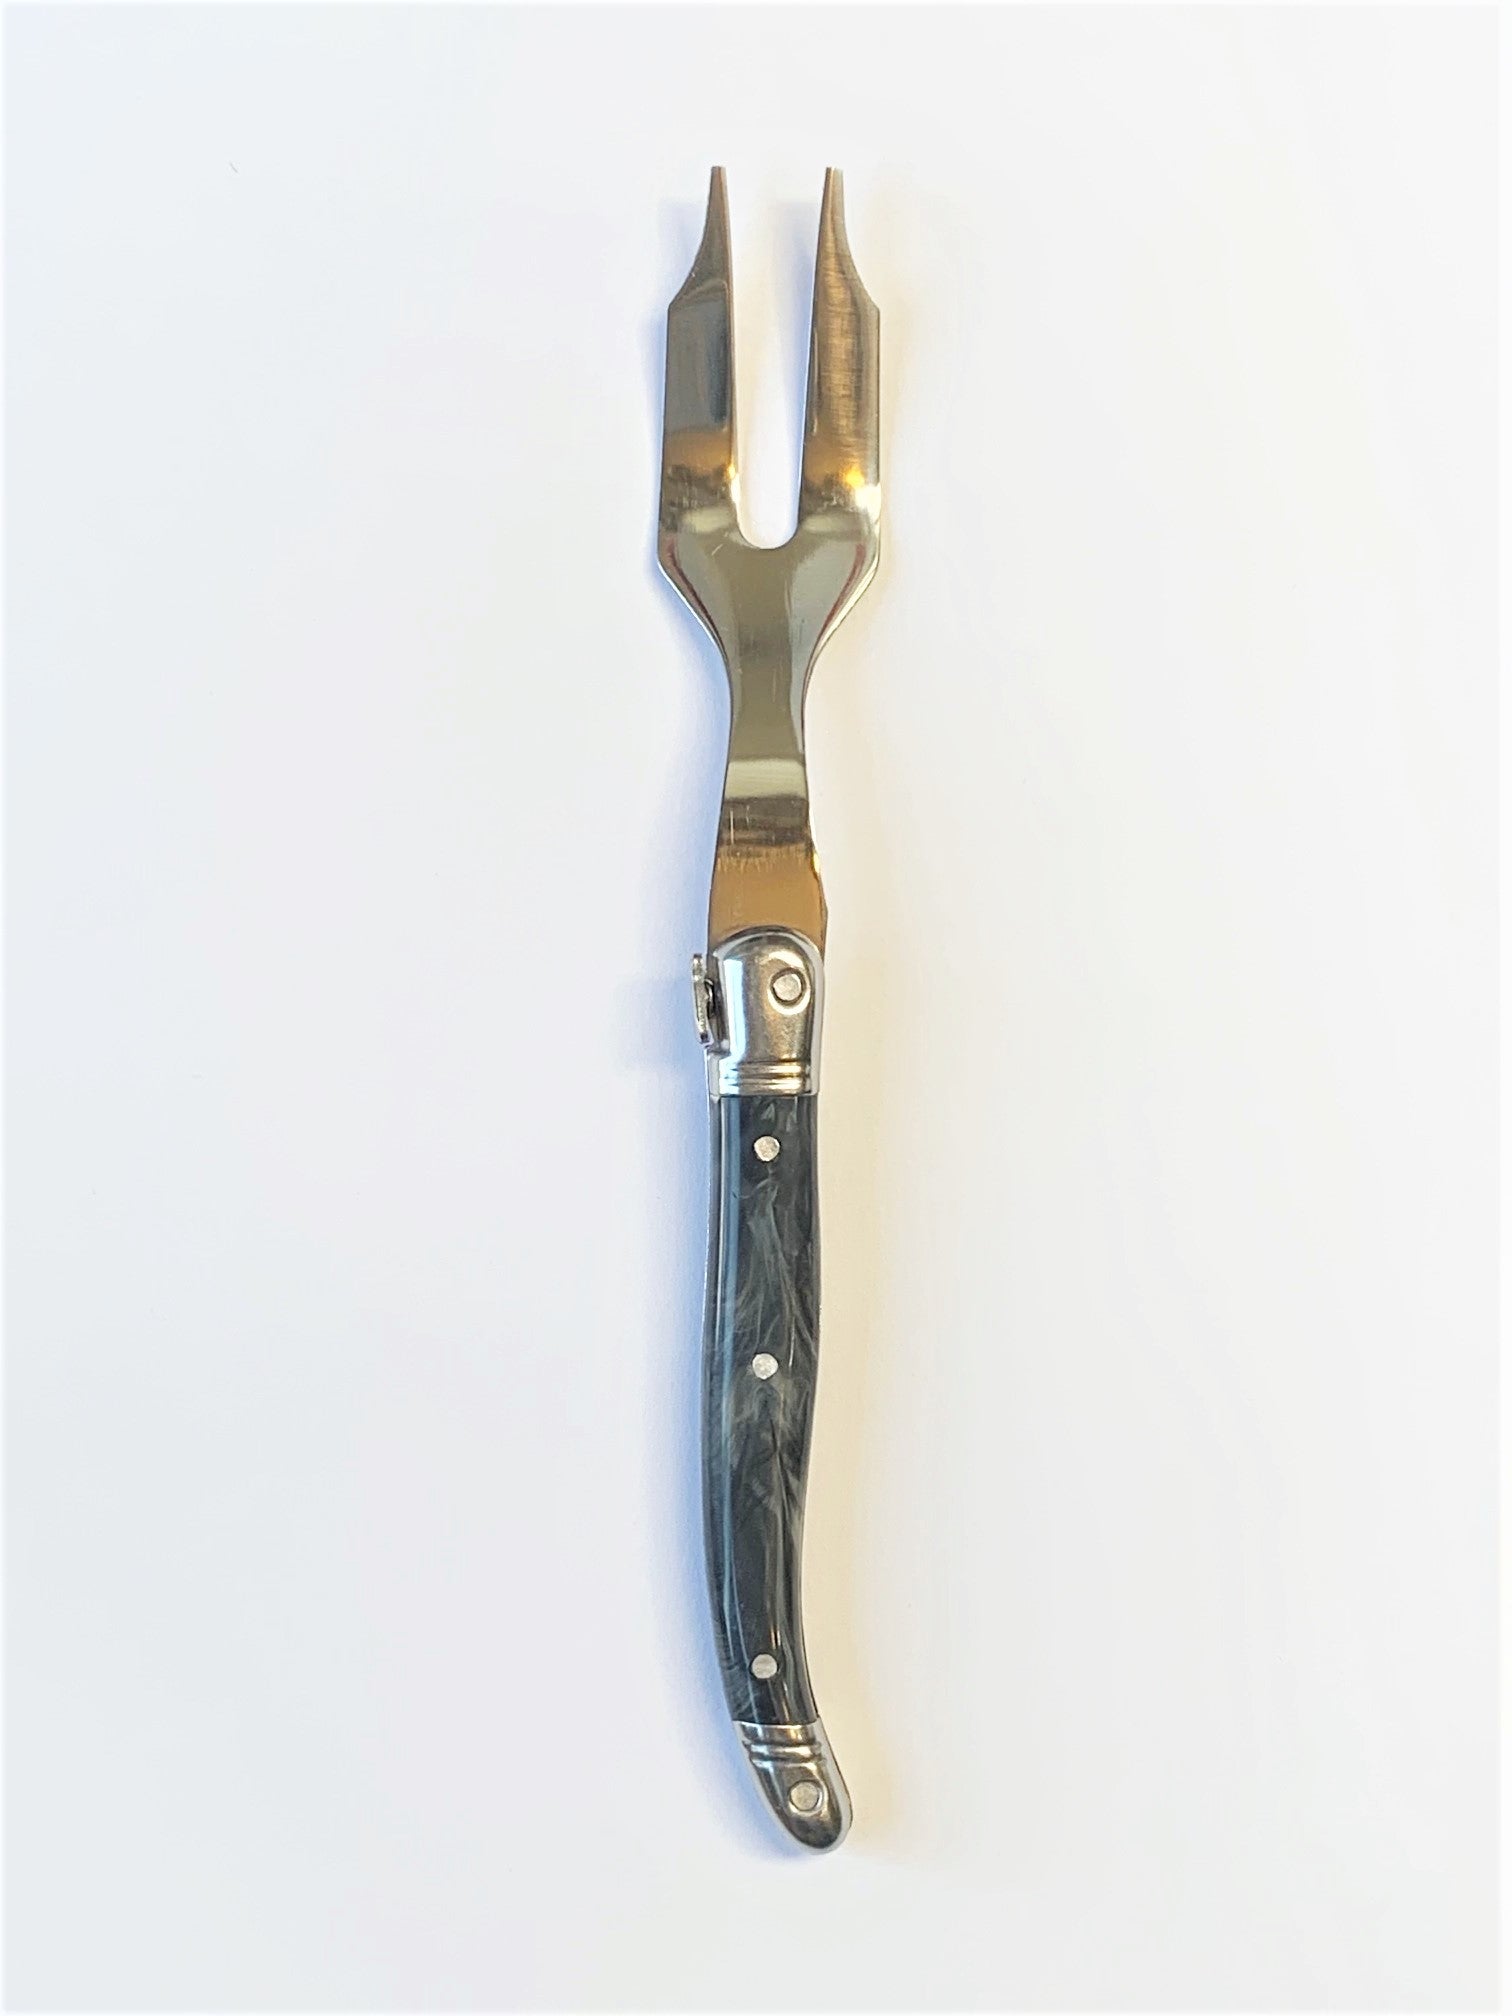 Laguiole Black Marble Charcuterie Fork Cutlery Laguiole Brand_Laguiole Carving Sets Kitchen_Dinnerware Laguiole BM2